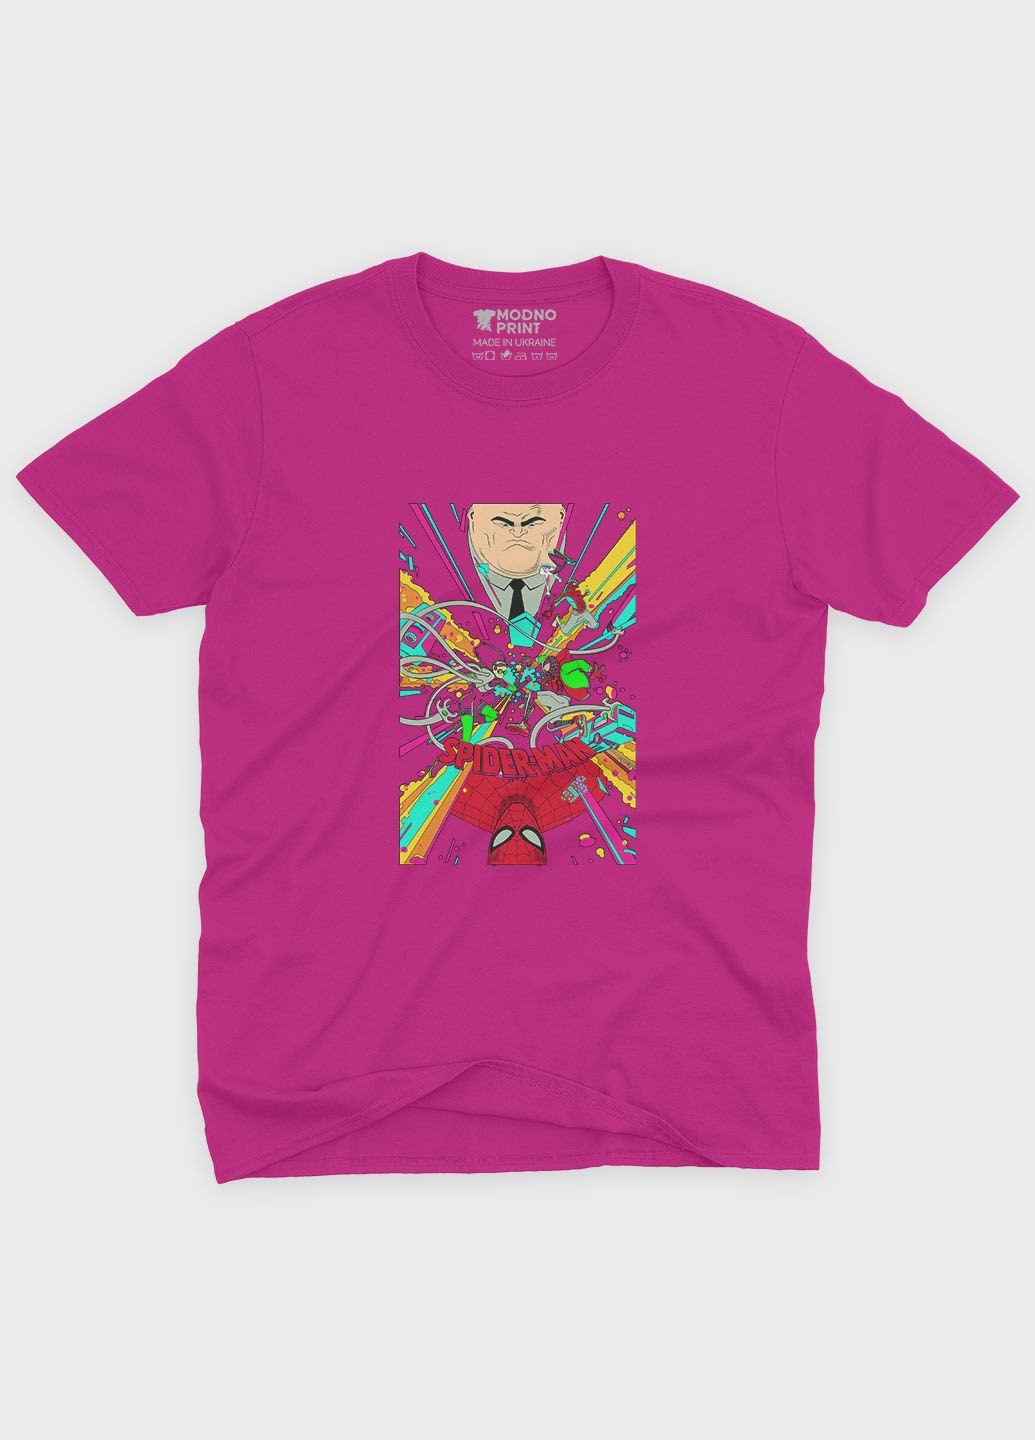 Розовая демисезонная футболка для девочки с принтом супергероя - человек-паук (ts001-1-fuxj-006-014-022-g) Modno